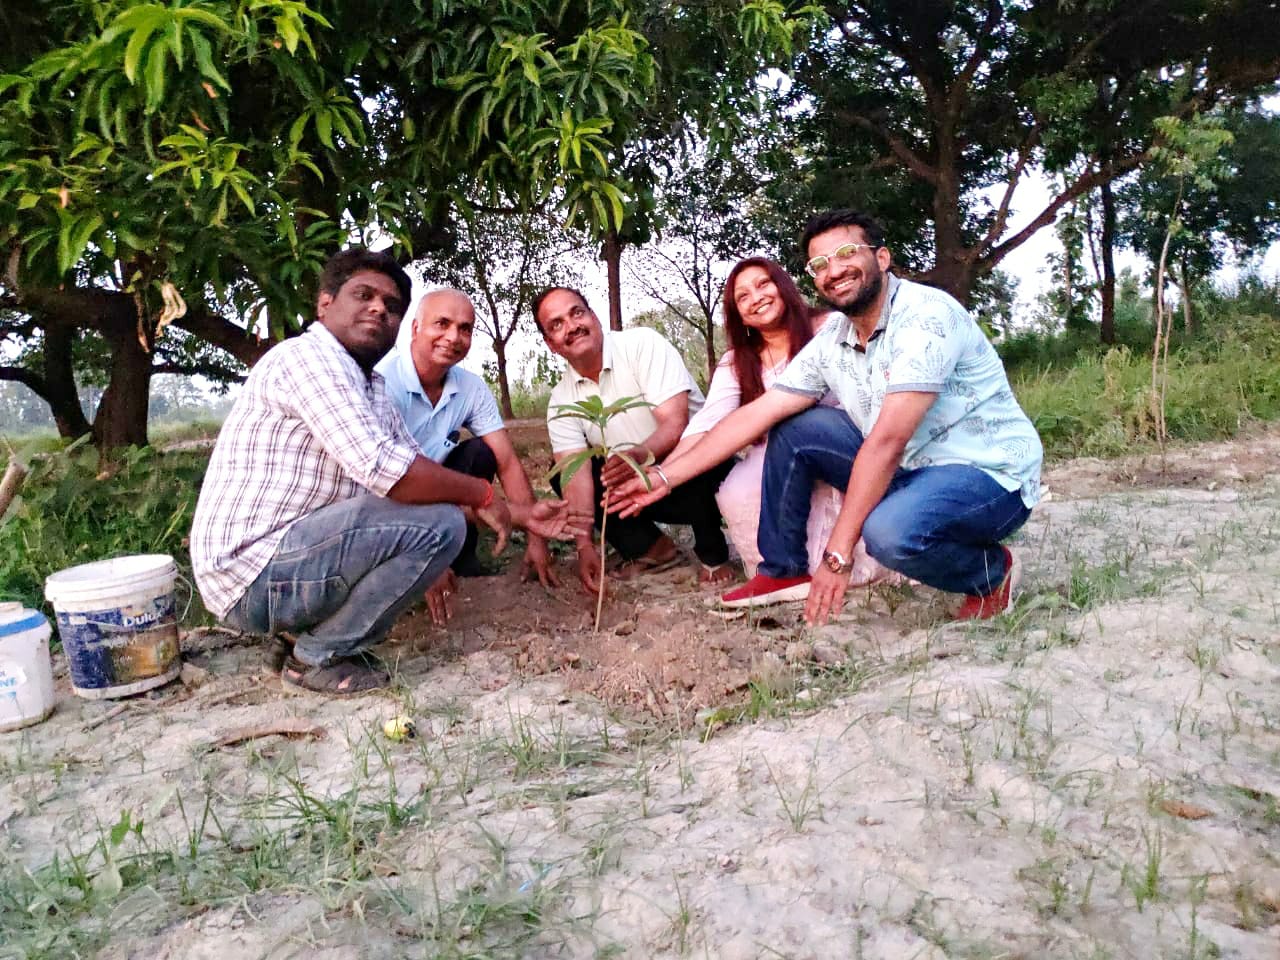 जन सांस्कृतिक एवं सामाजिक विकास संस्थान बहराइच द्वारा विश्व पर्यावरण दिवस पर हुआ वृक्षारोपण कार्यक्रम का आयोजन | New India Times